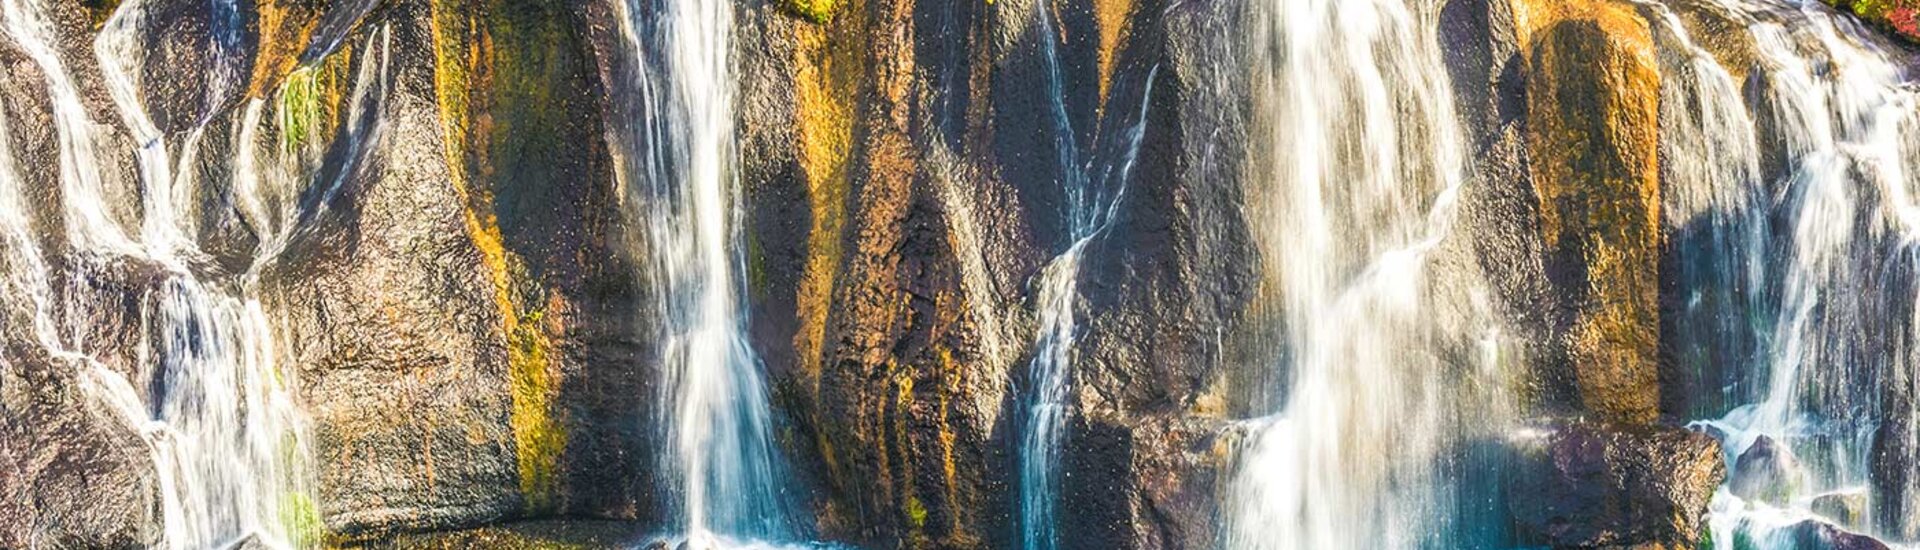 Lavawasserfall Hraunfossar